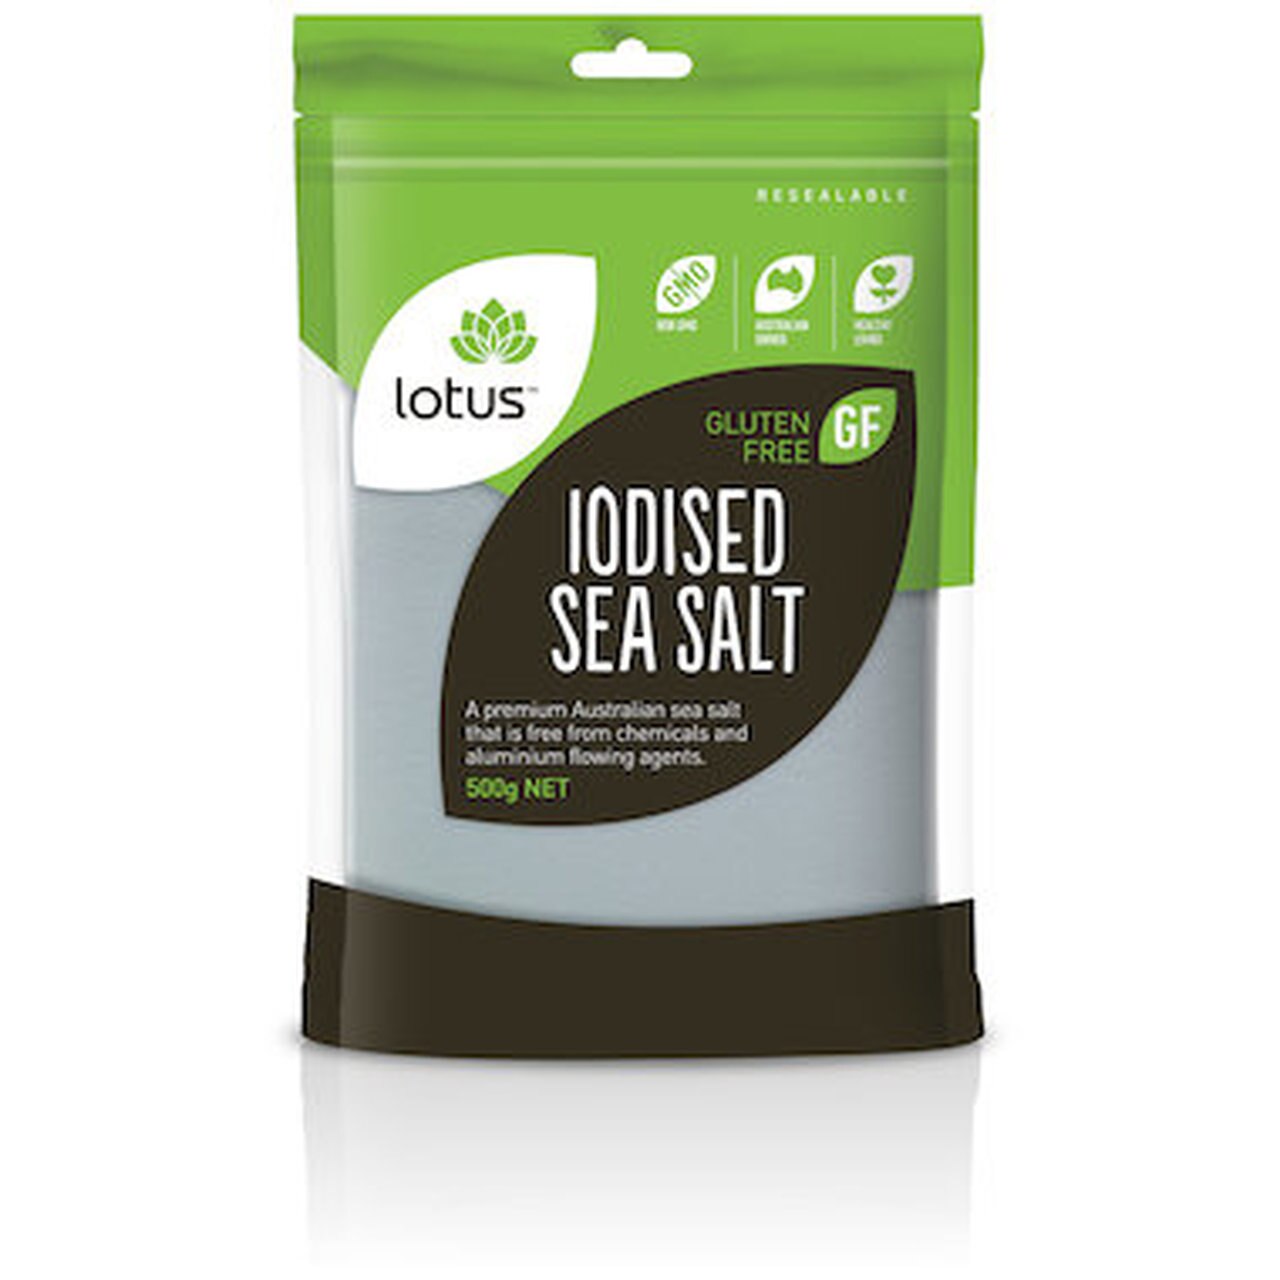 Lotus Sea Salt Iodised - no flowing agent (500g)